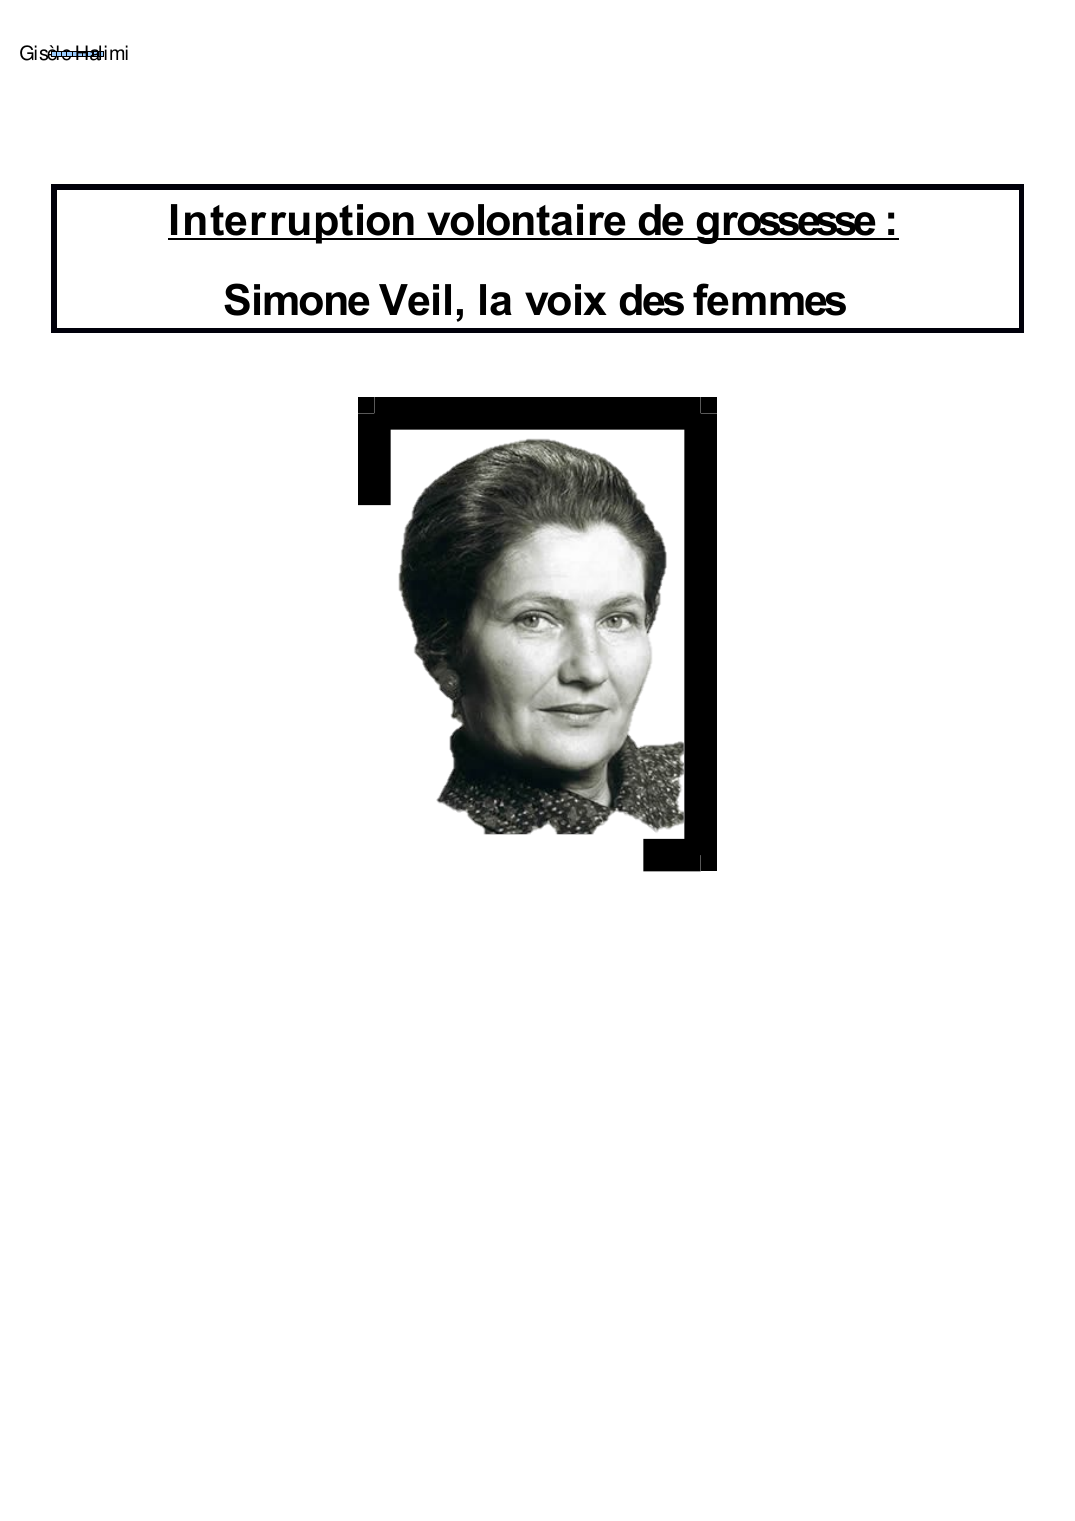 Prévisualisation du document Simone Veil